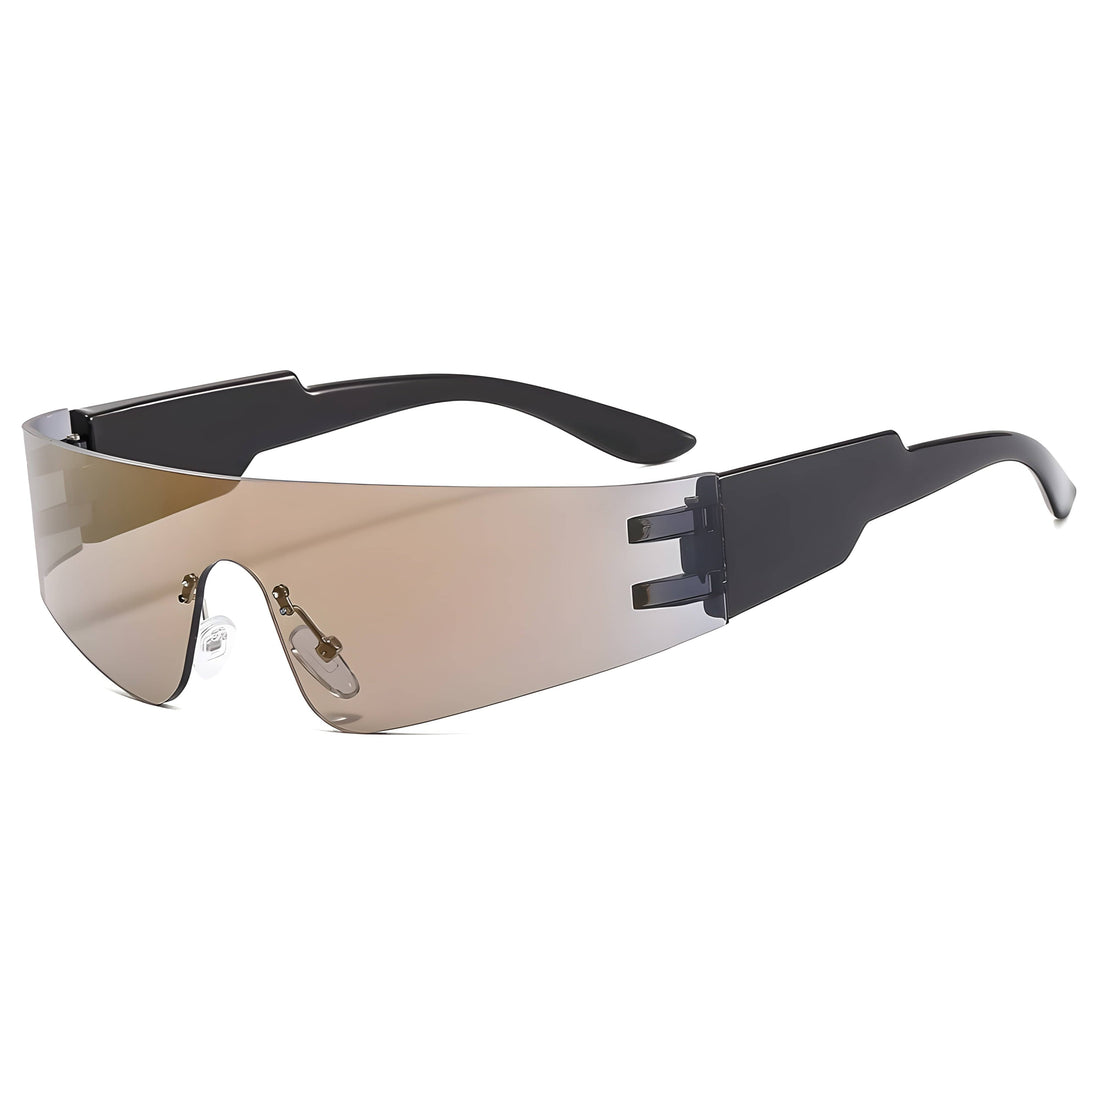 Rave Essentials Co. Desert Black Futuristic Full Send Raver Sunglasses